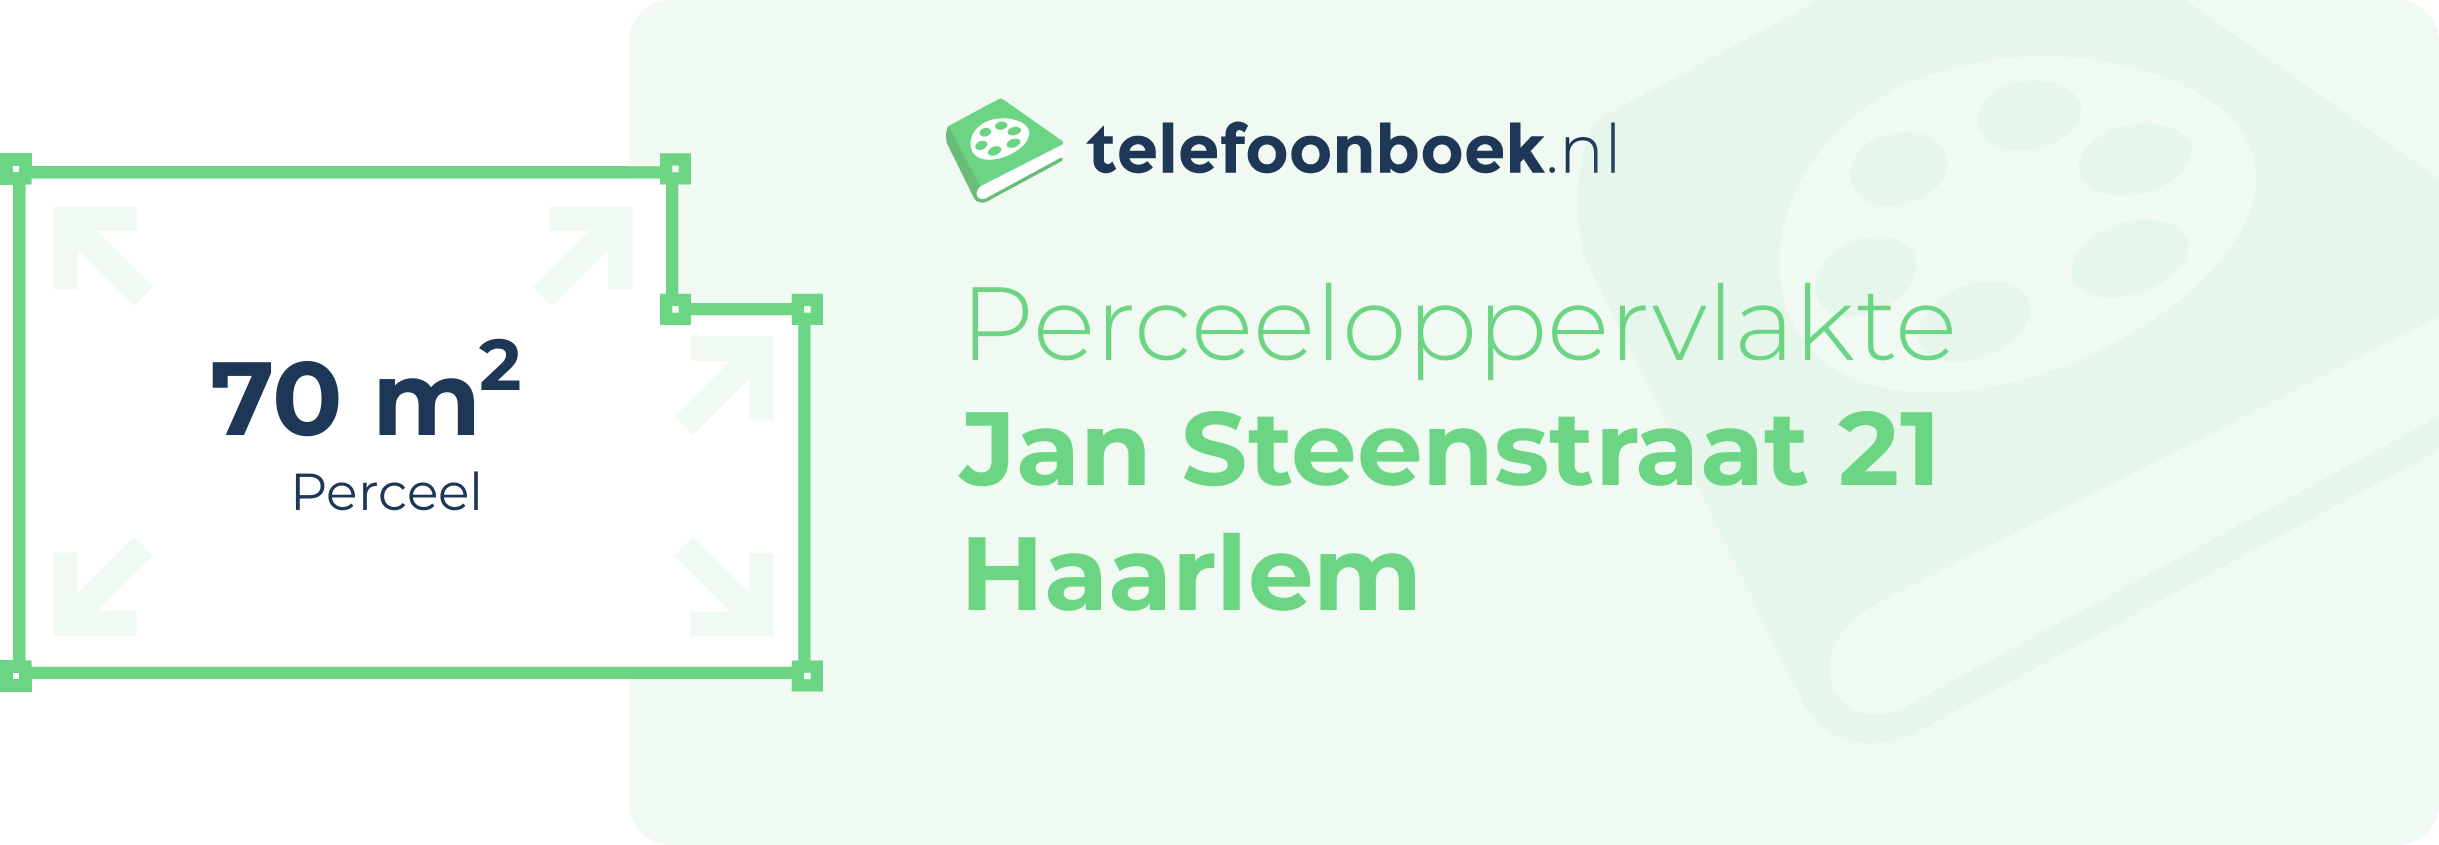 Perceeloppervlakte Jan Steenstraat 21 Haarlem